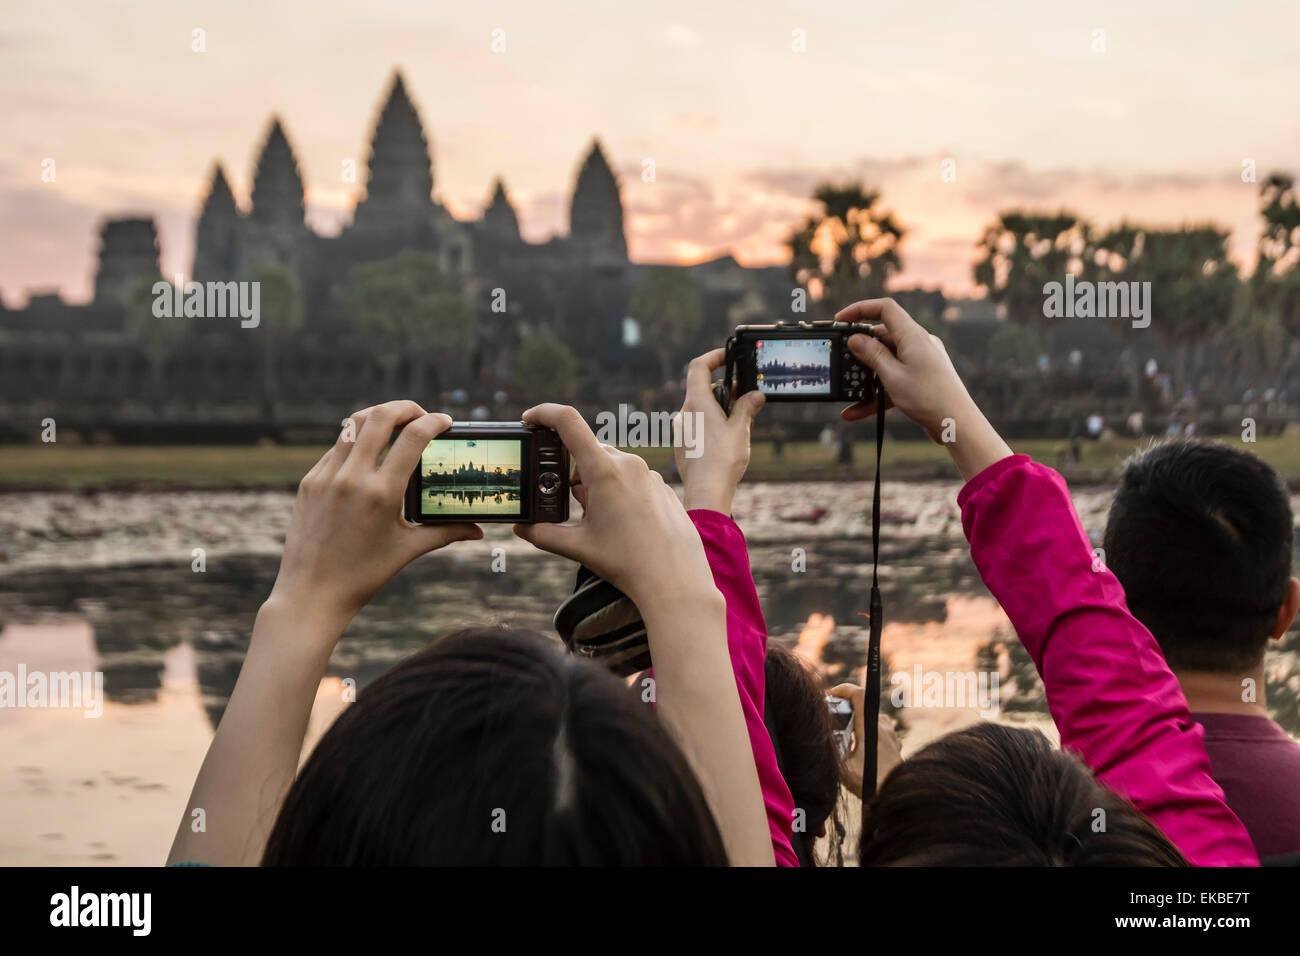 Les touristes de photographier le lever du soleil sur l'entrée ouest de Angkor Wat, Angkor, l'UNESCO, Siem Reap, Cambodge, Indochine, Asie Banque D'Images